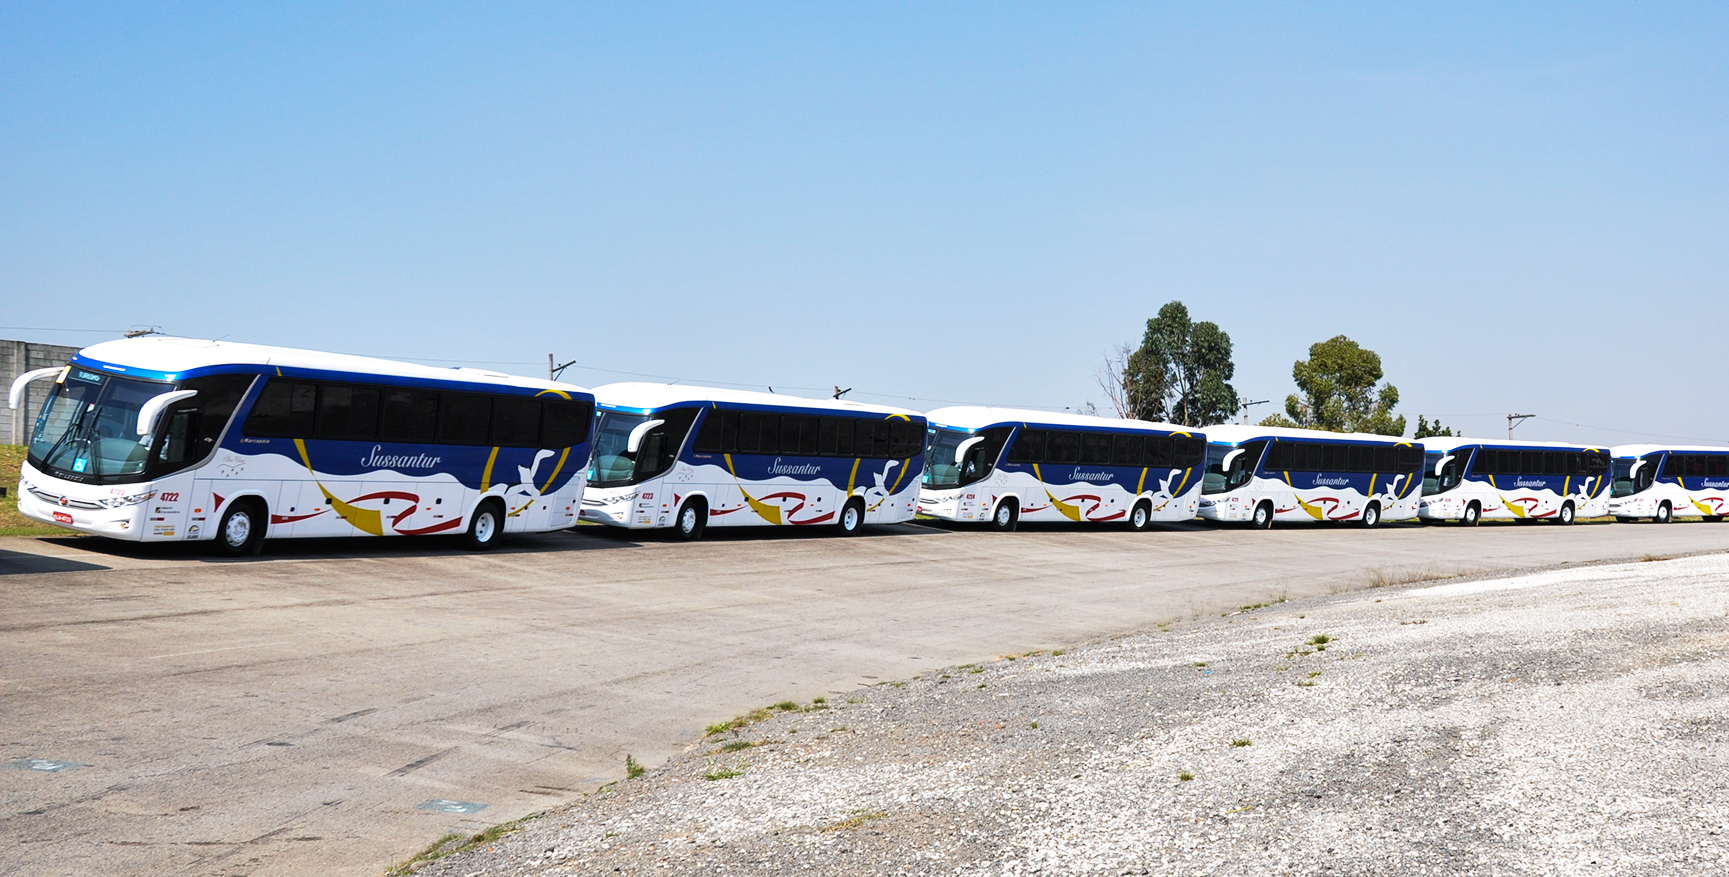 Ônibus G7 1050 - Local_Autodromo de Interlagos_2